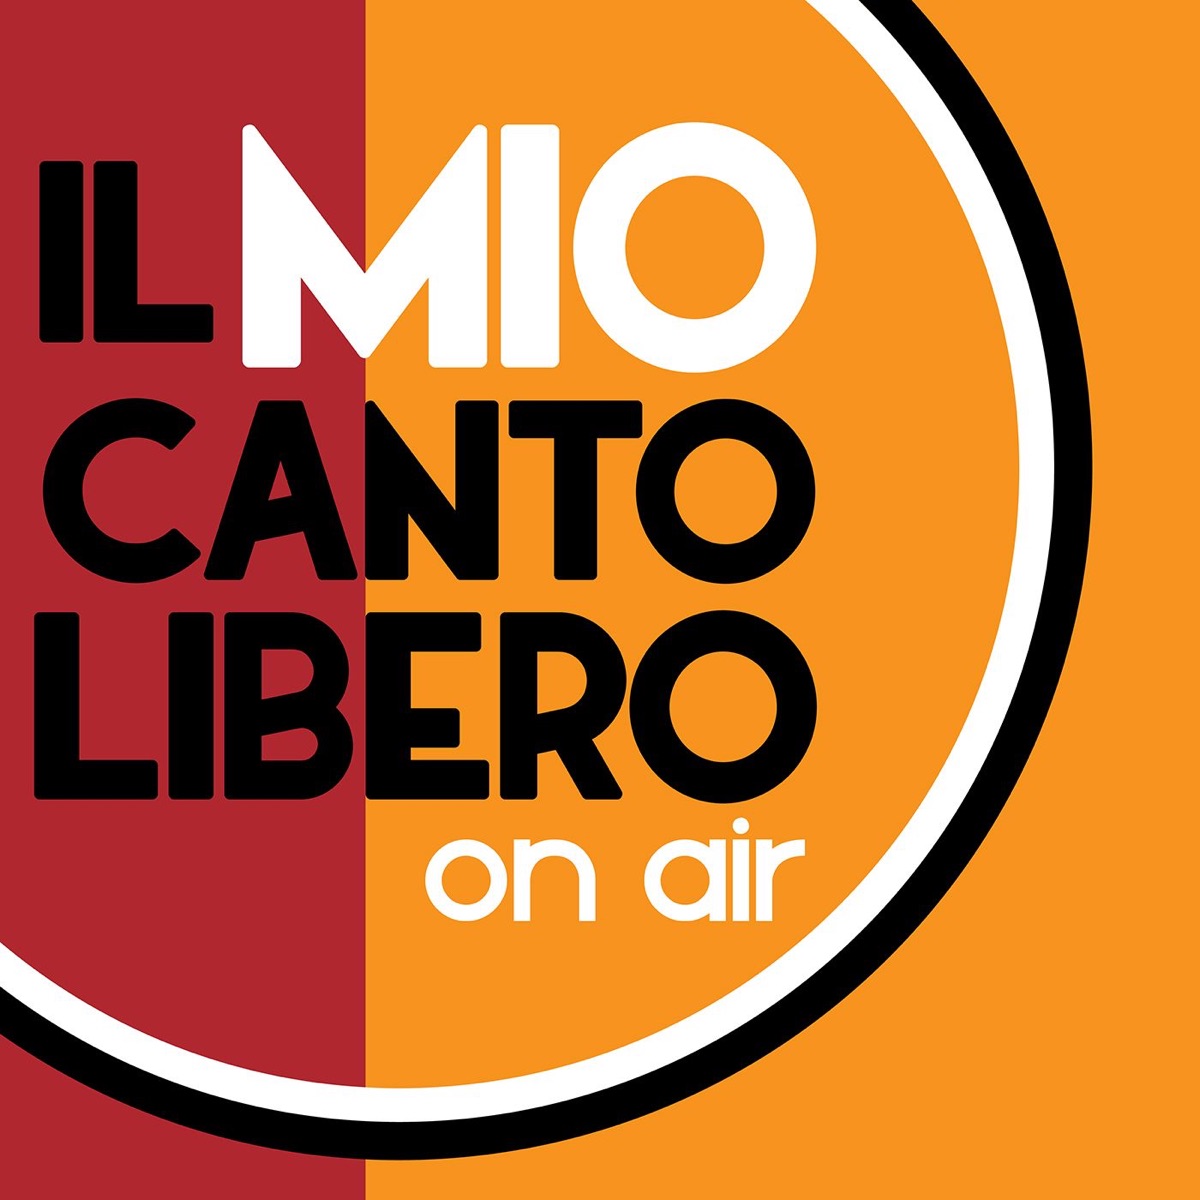 Il Mio Canto Libero On Air – Podcast – Podtail